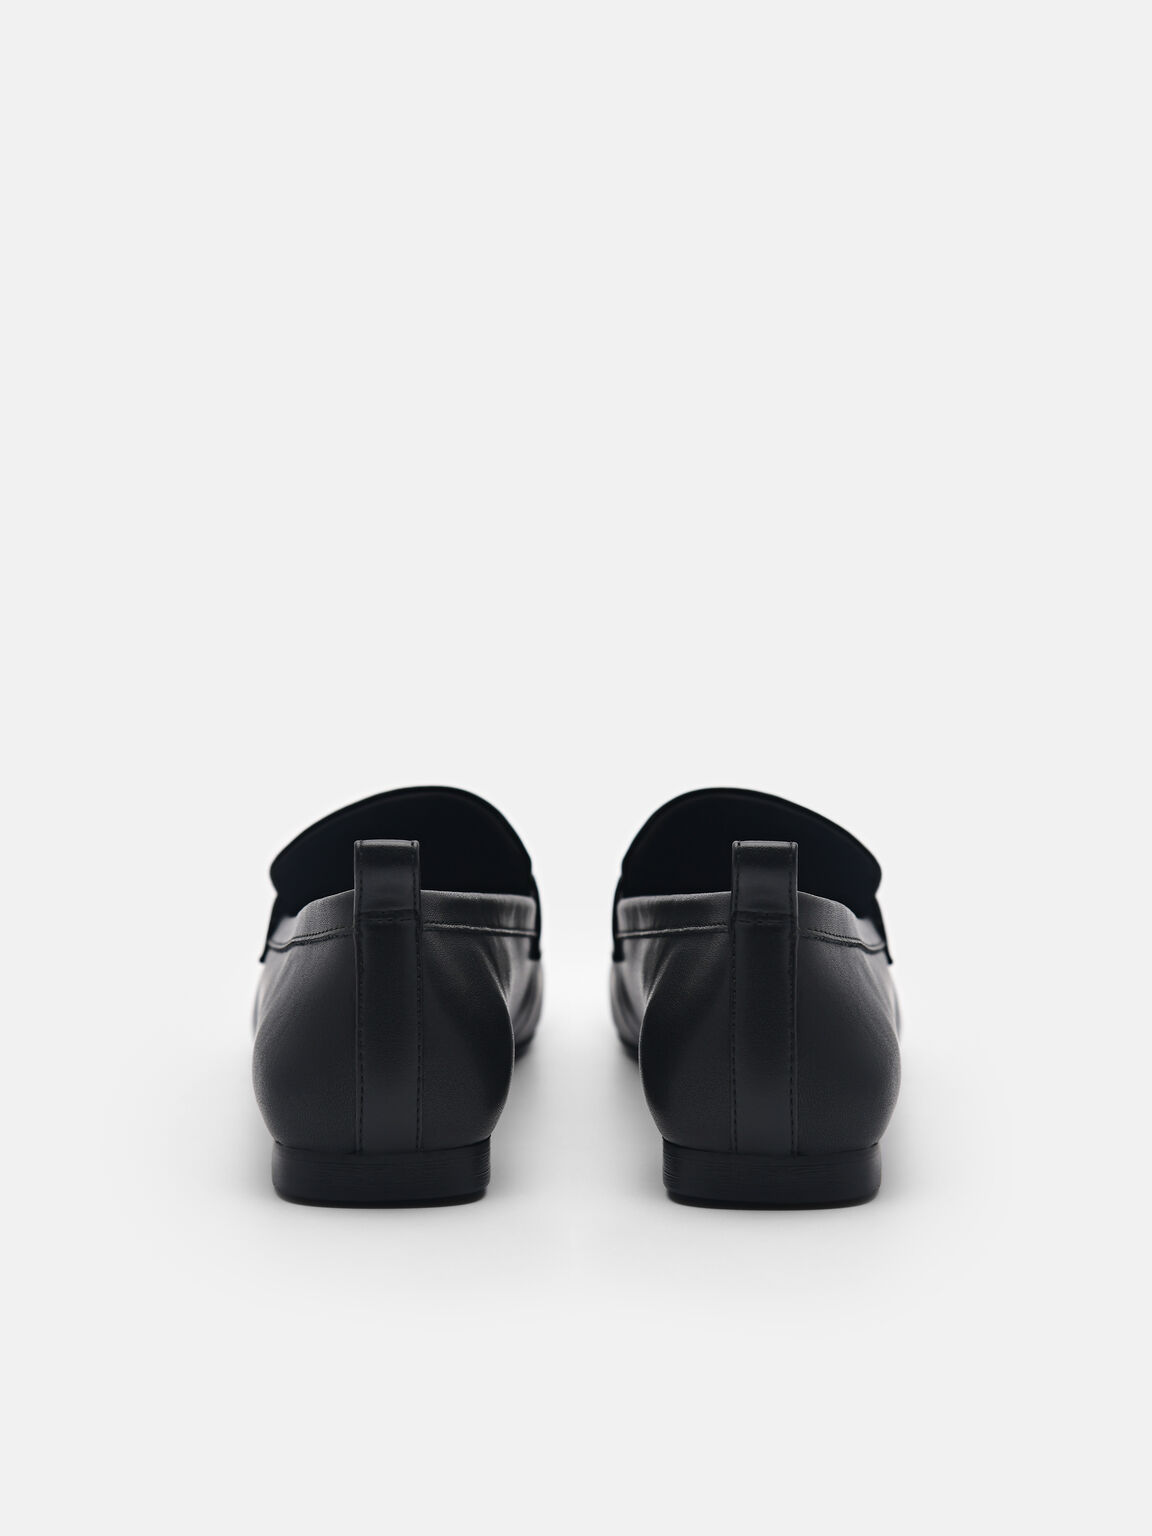 Eden Leather Loafers, Black, hi-res